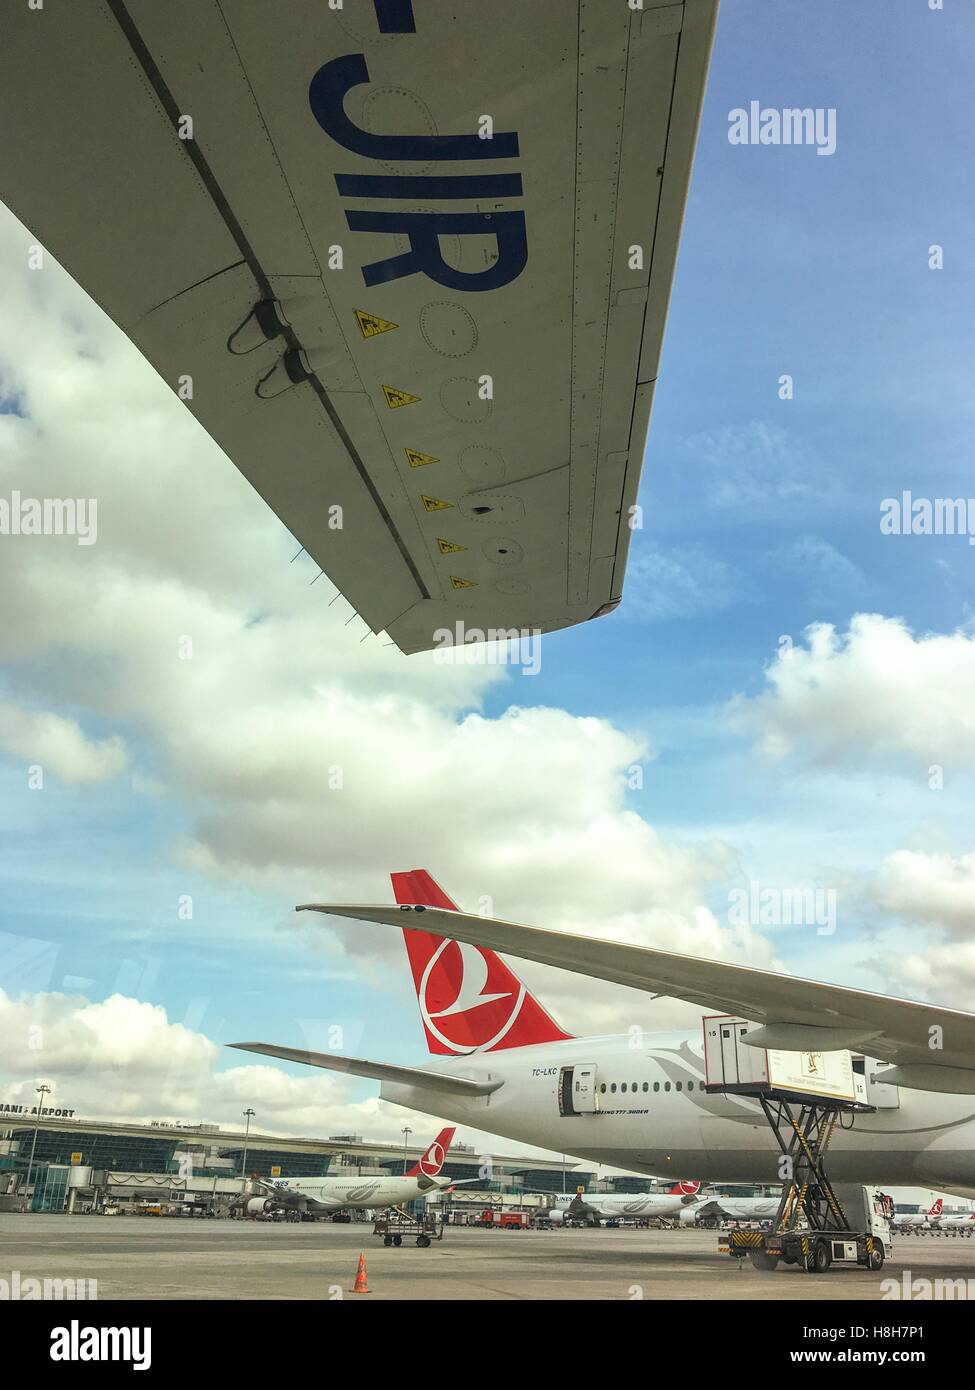 Turkish Airlines Airbus A330-203 le taxi à l'aéroport International Ataturk. C'est l'aéroport desservant Istanbul et le plus grand aéroport en Turquie par nombre de pa Banque D'Images